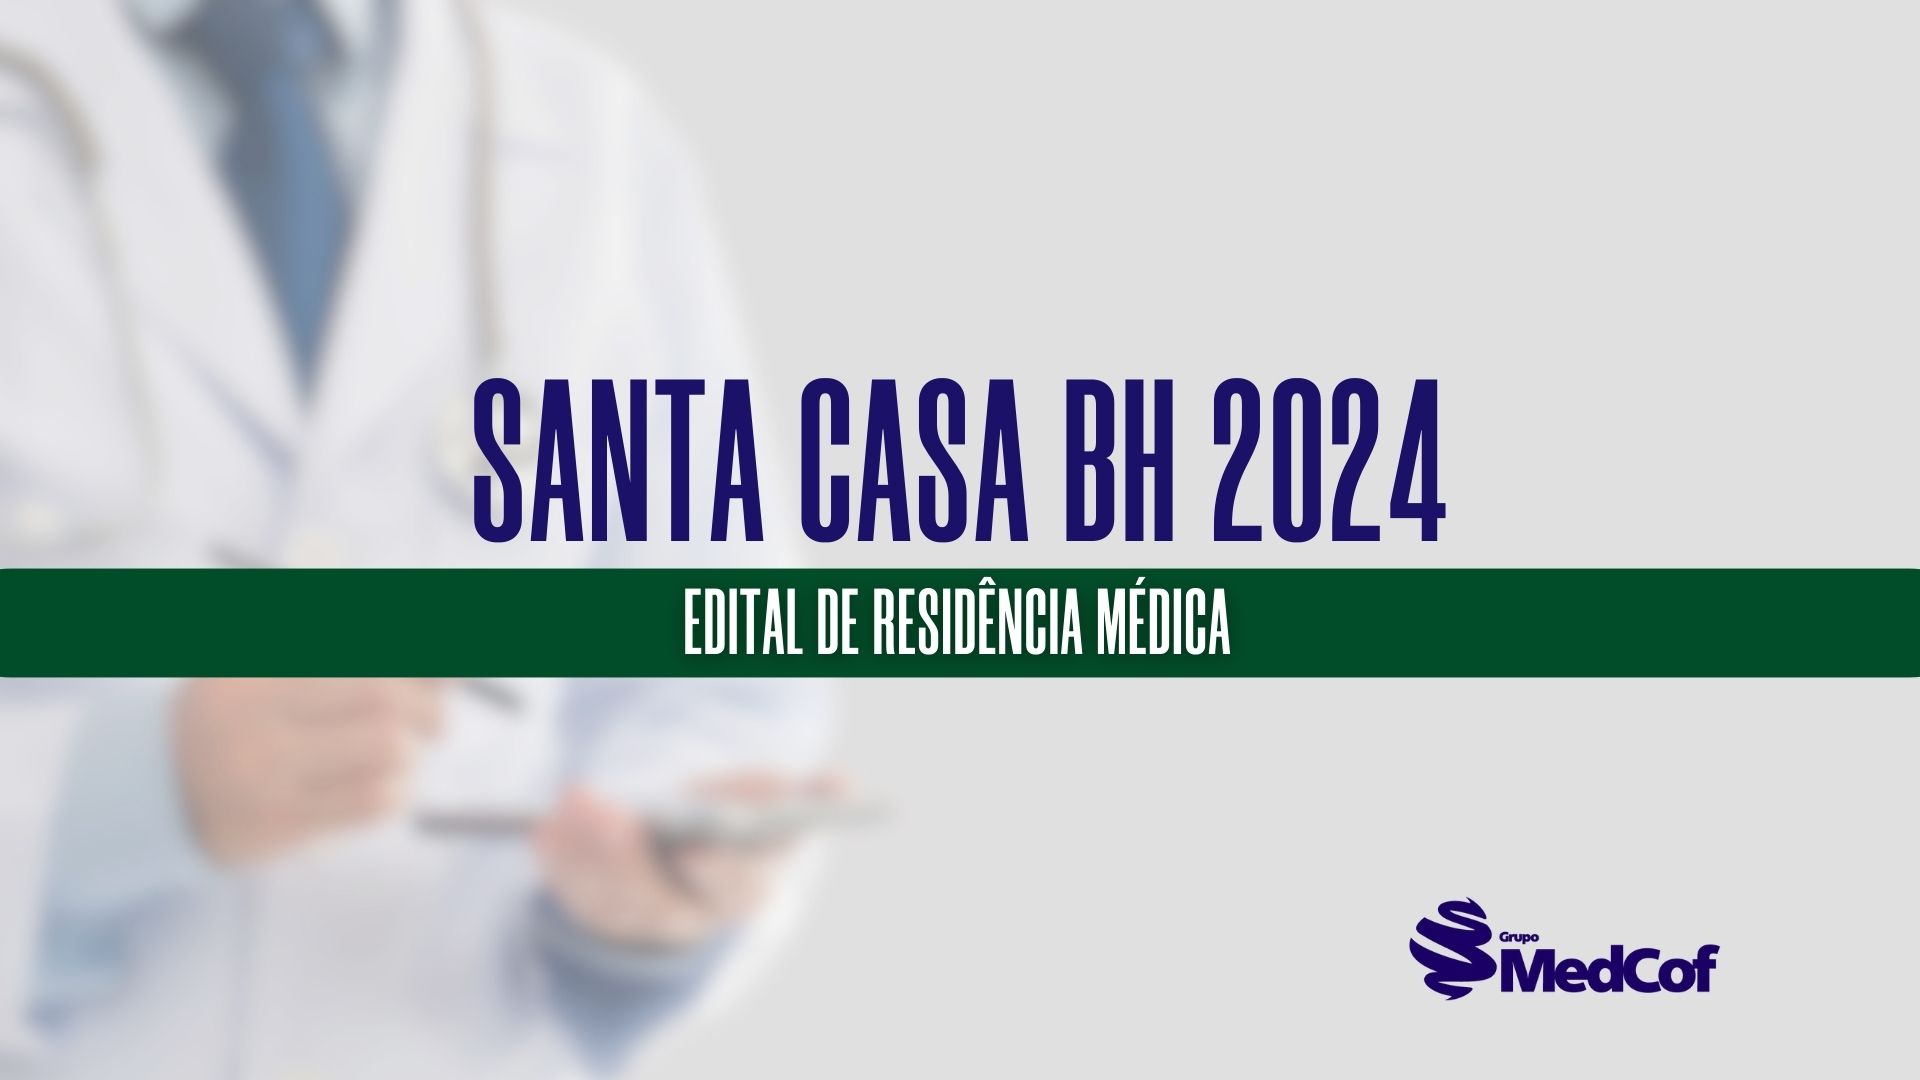 Santa Casa BH divulga Edital de Residência Médica 2024 - Blog Grupo MedCof